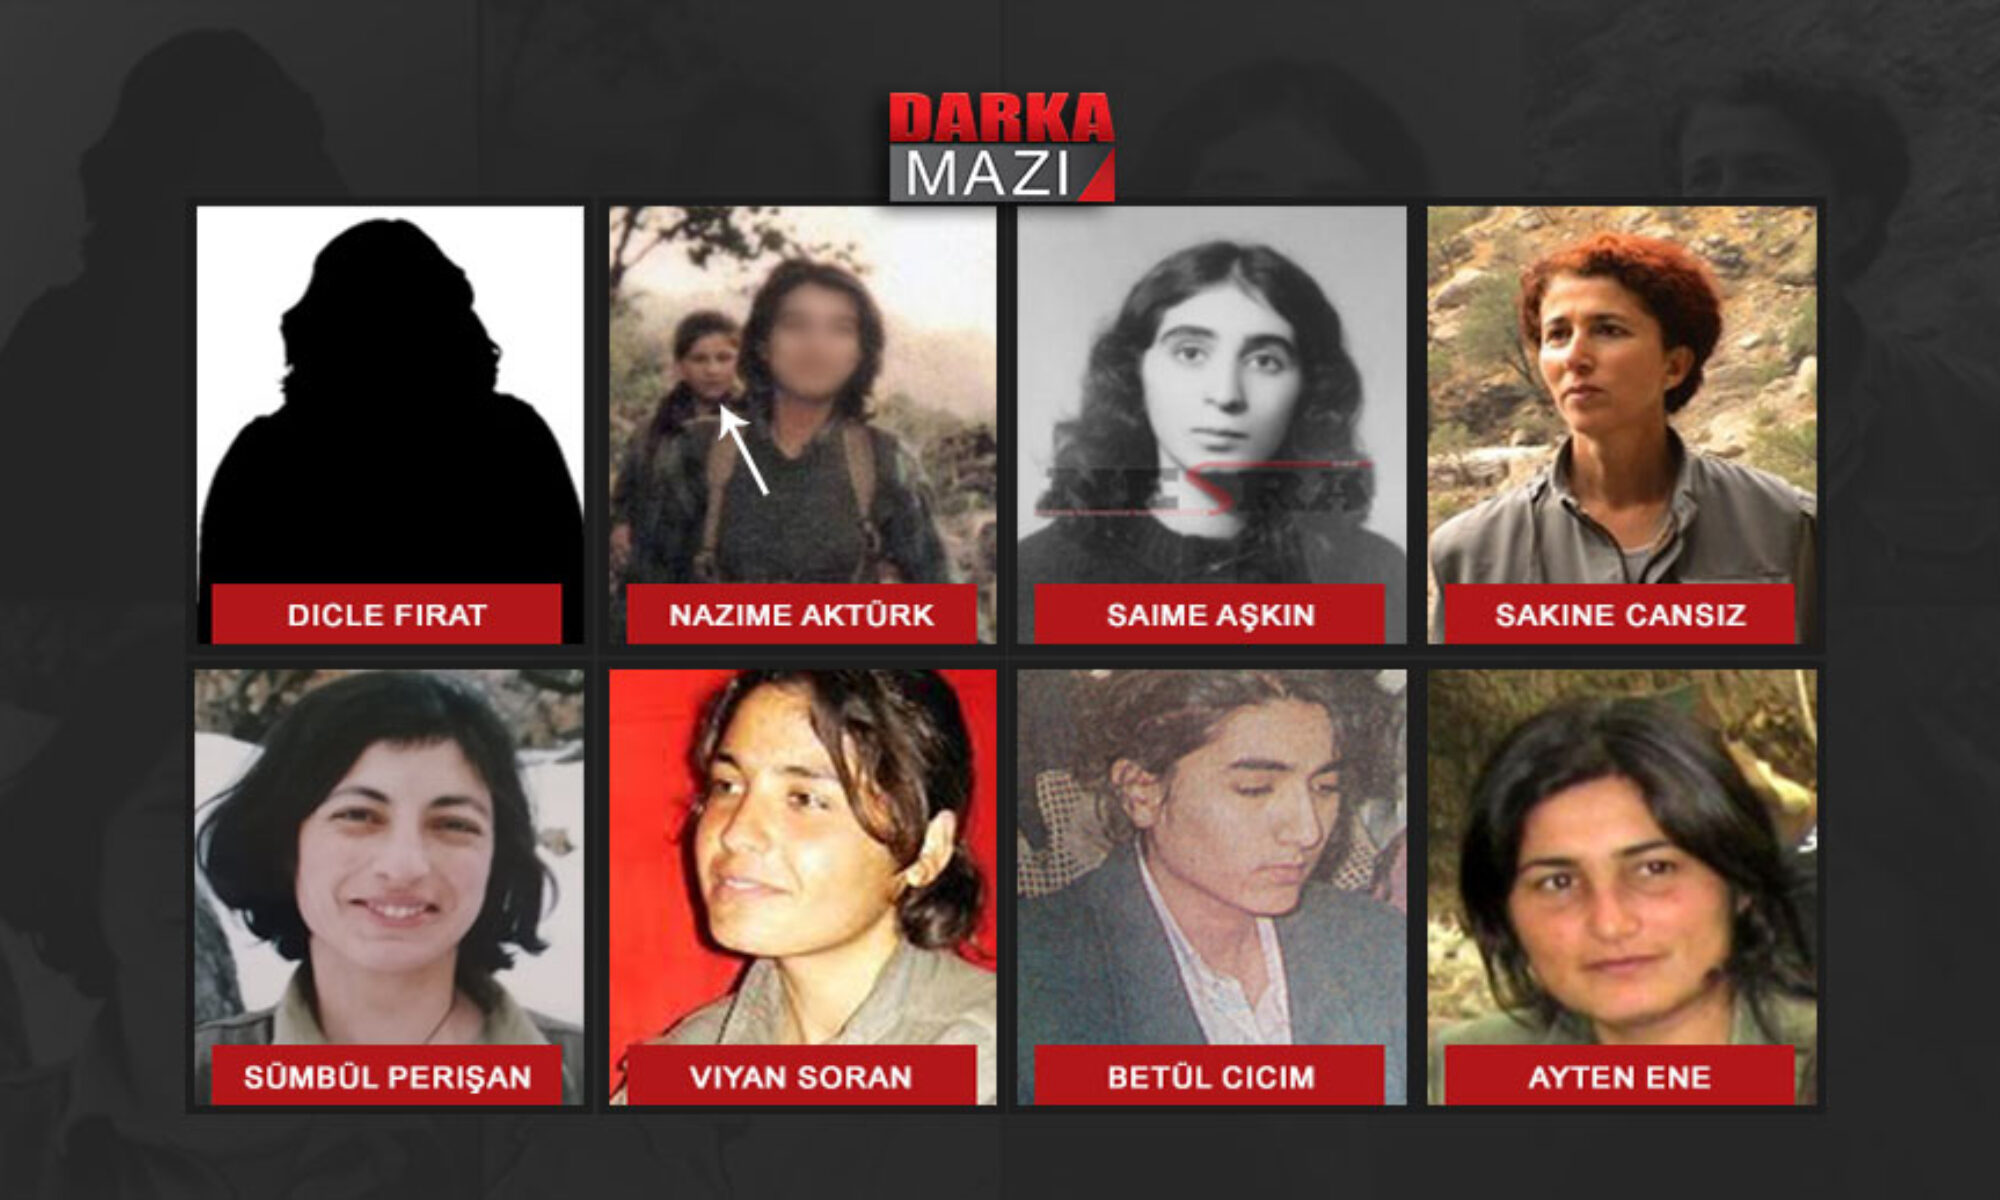 8 Mart Dünya Kadınlar Günü’nde 8 Kürt kadınının portresi, Abdullah Öcalan, PKK, Saime Aşkın, Filiz Yerlikaya, Viyan Soran, Betül Cicim, Sakince Cansız, kadın gerilla, kadın peşmerge, Ağrı dağından kadınlar, Kürt kadınları, Prokrustes'in yatağı, ideoloji, kadın partisi